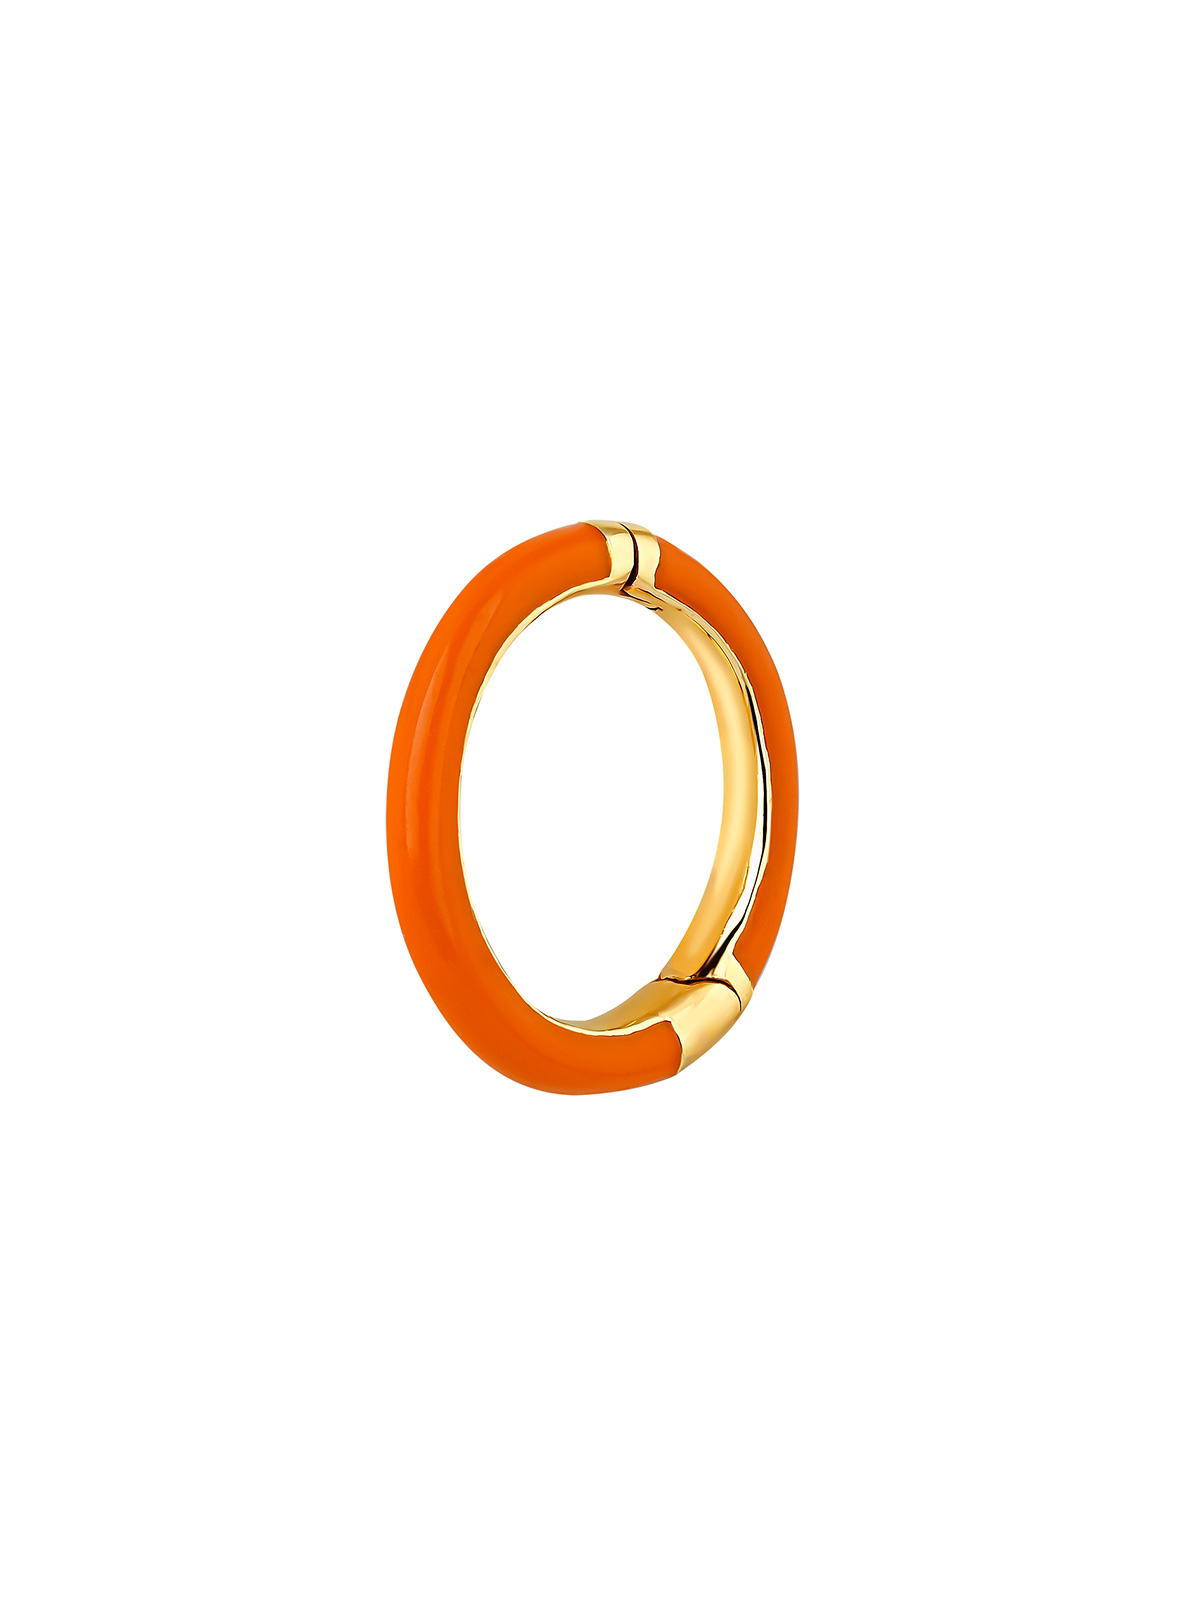 Boucle d'oreille individuelle de cerceau moyen en or jaune 9K avec émail orange.